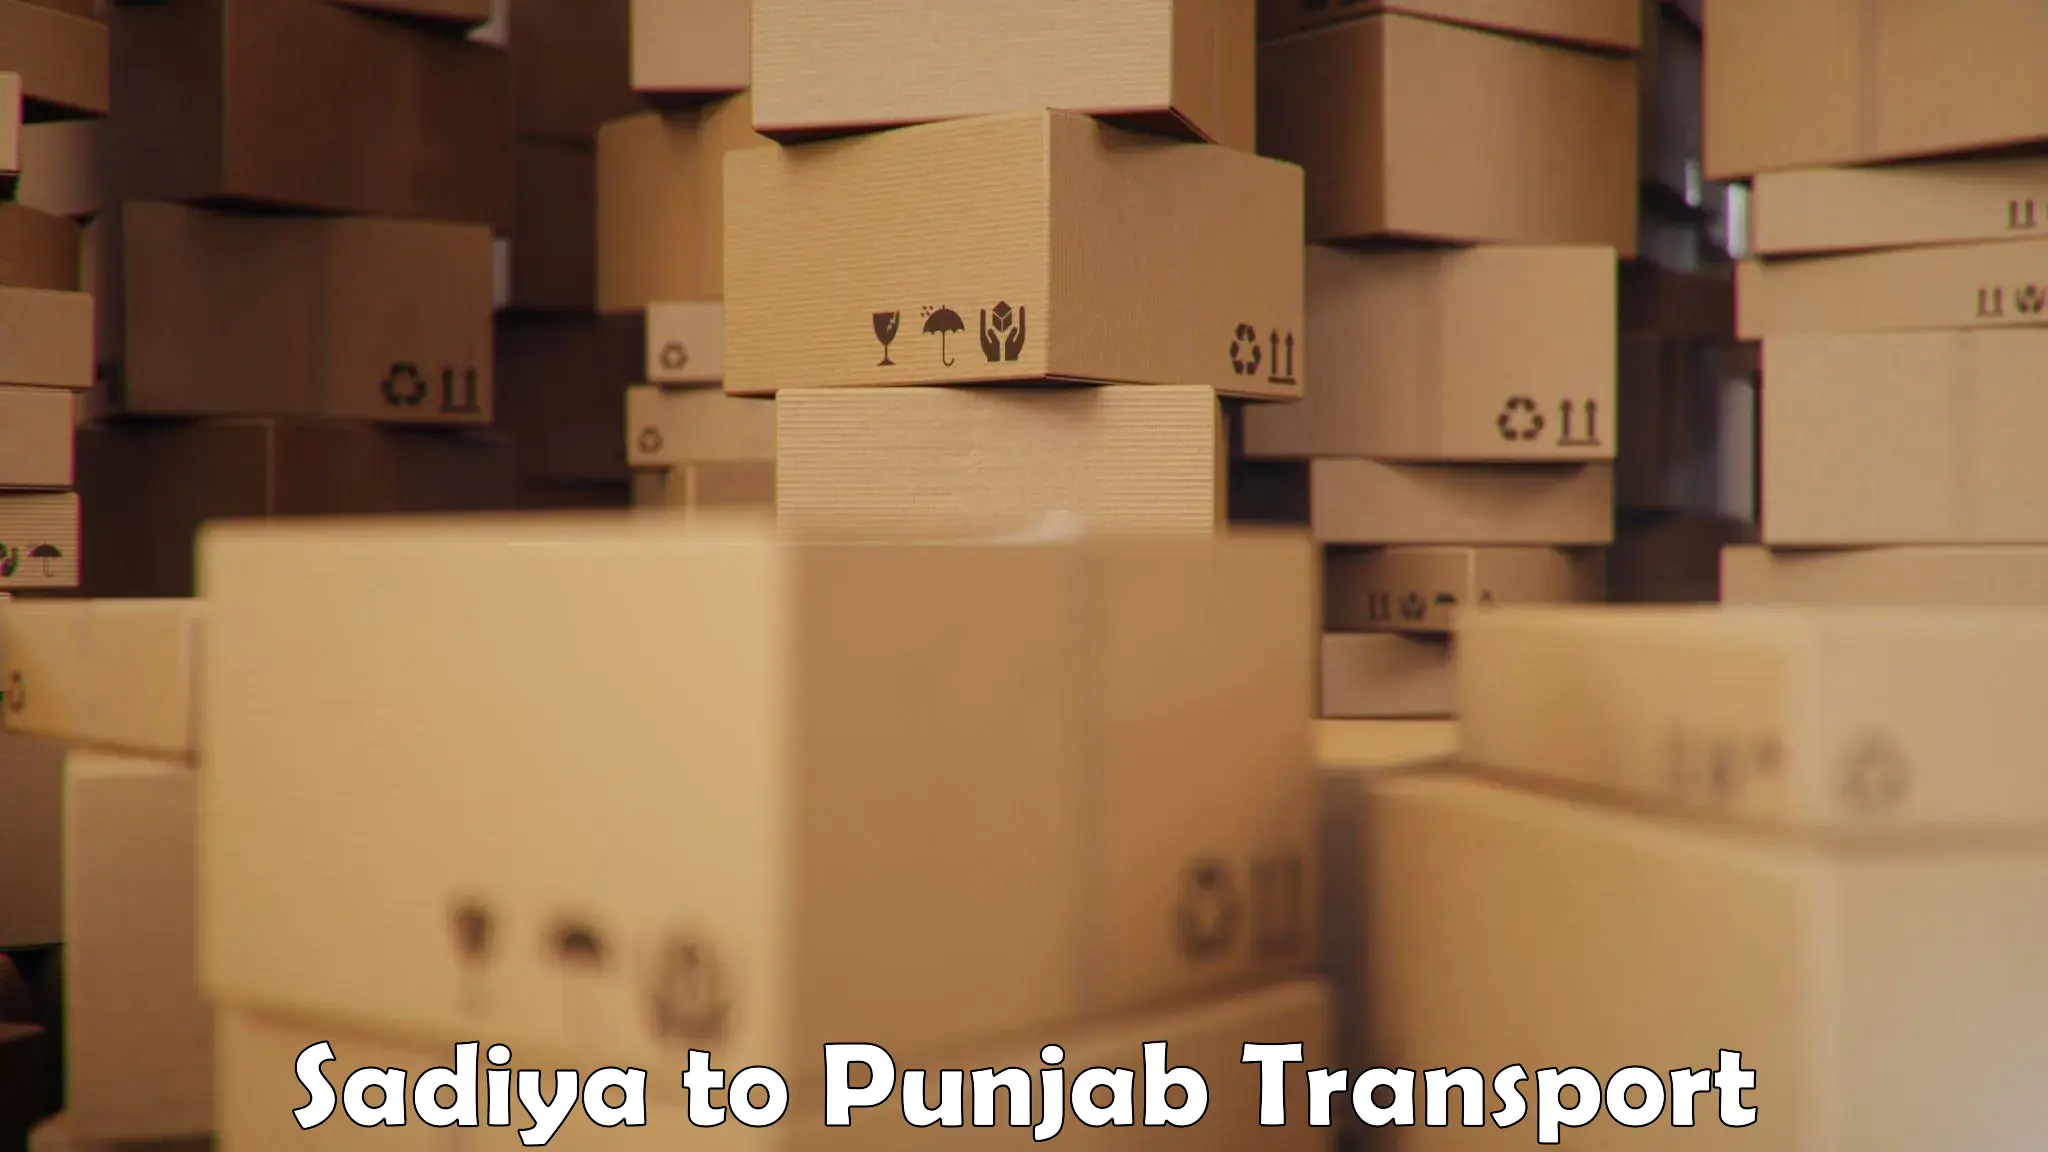 Lorry transport service Sadiya to Punjab